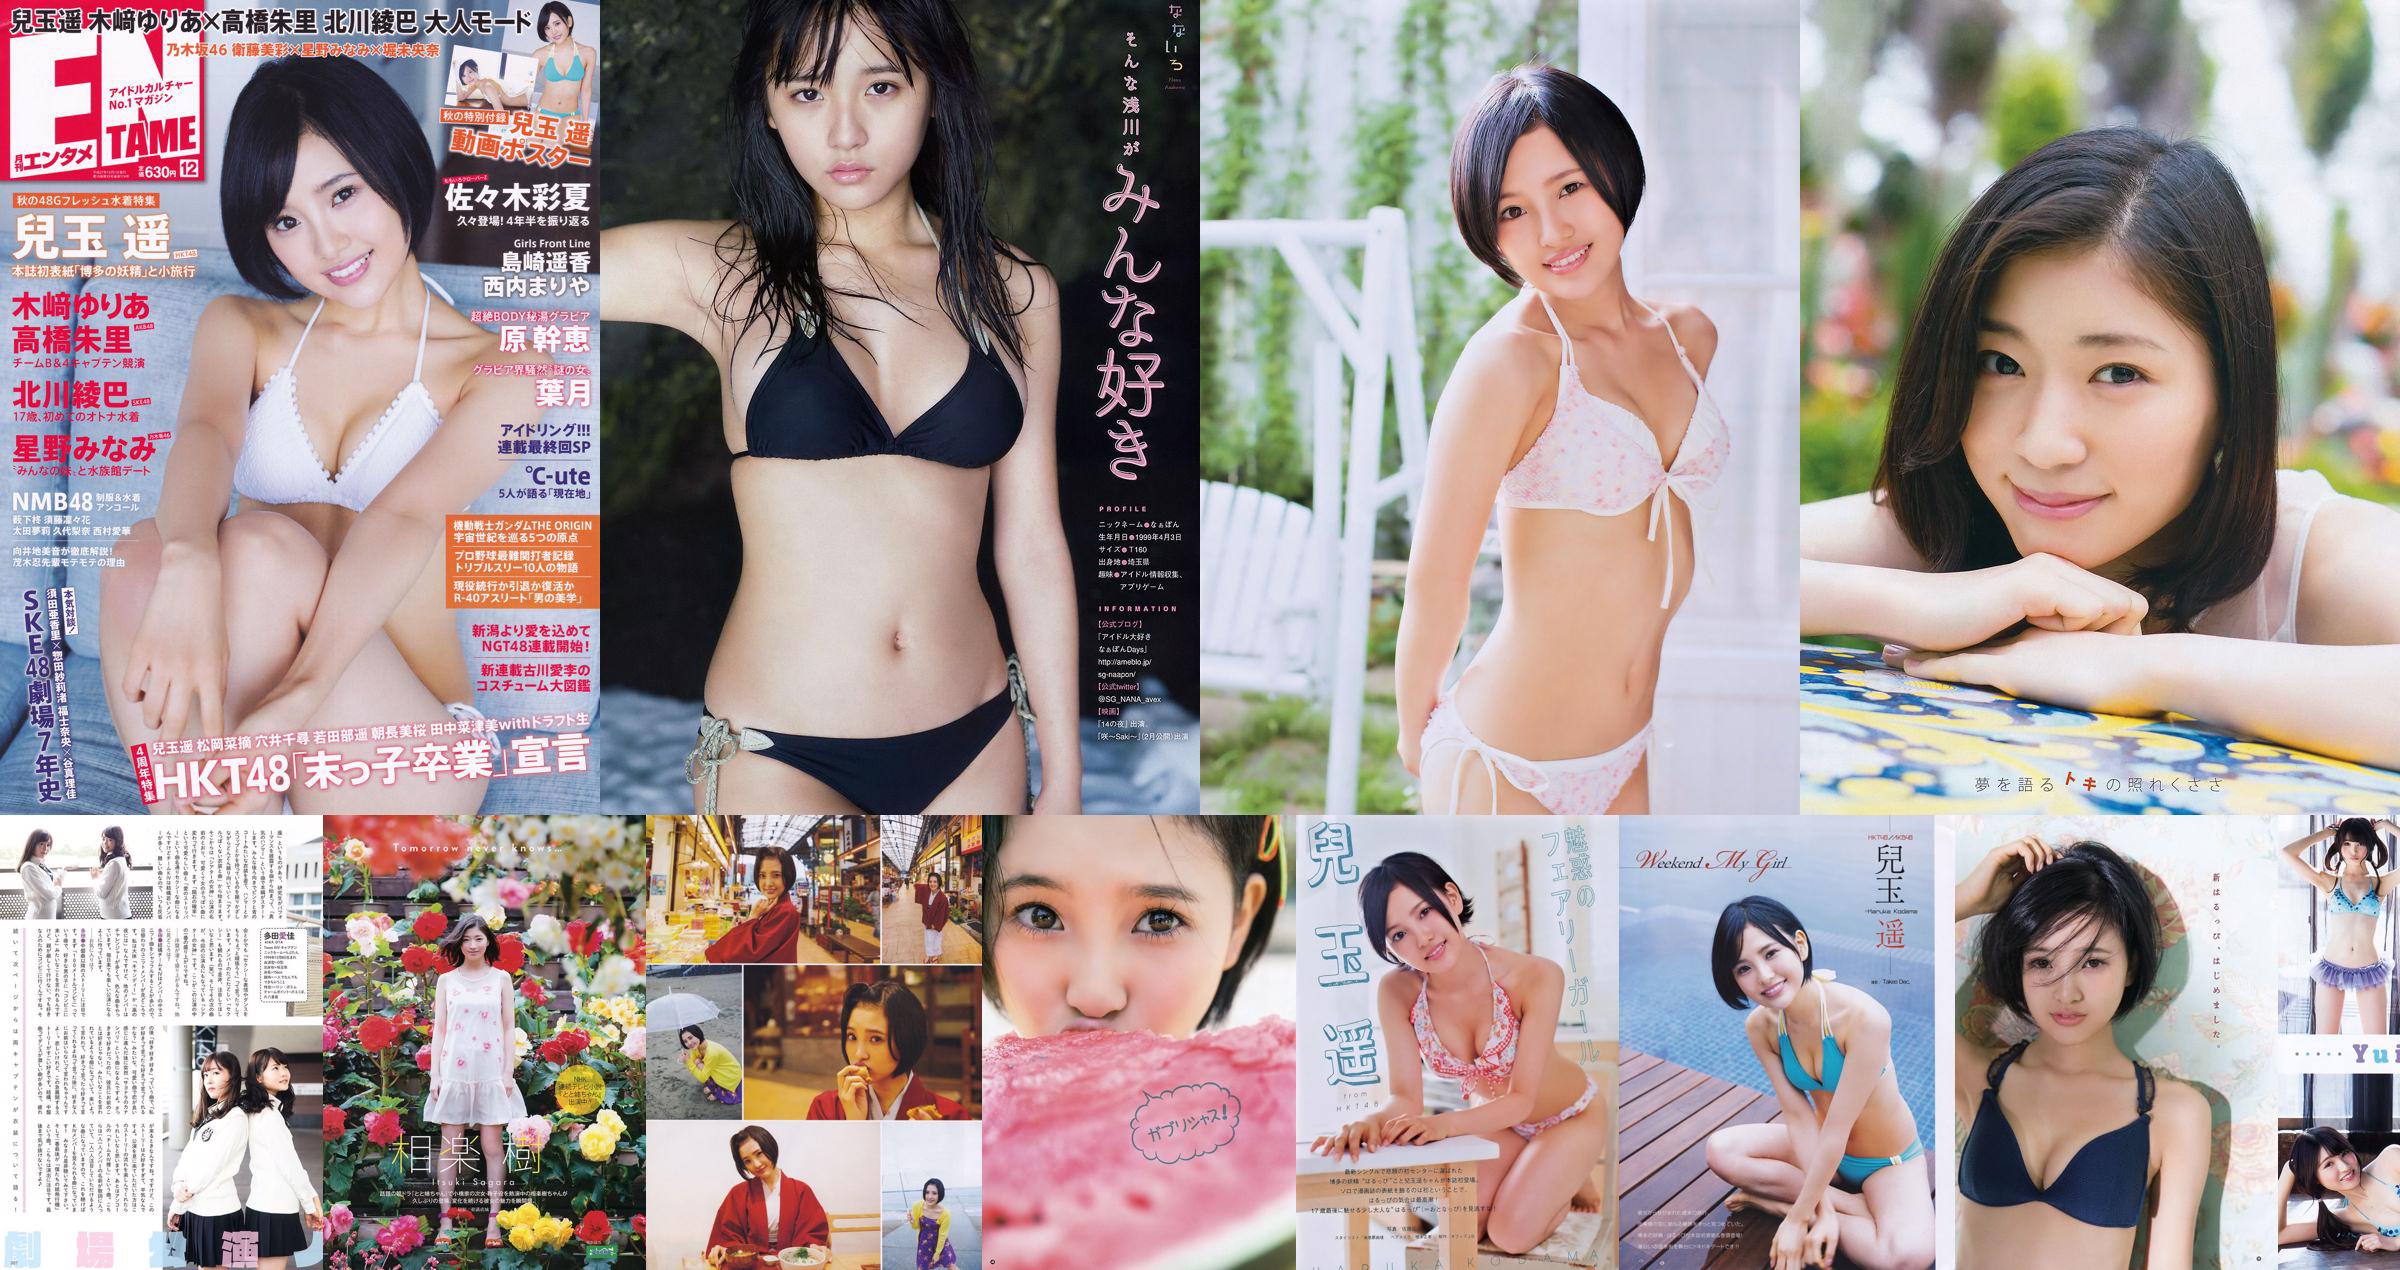 [Young Gangan] Haruka Kodama Rion 2015 No.23 Photo Magazine No.0735f7 Page 1